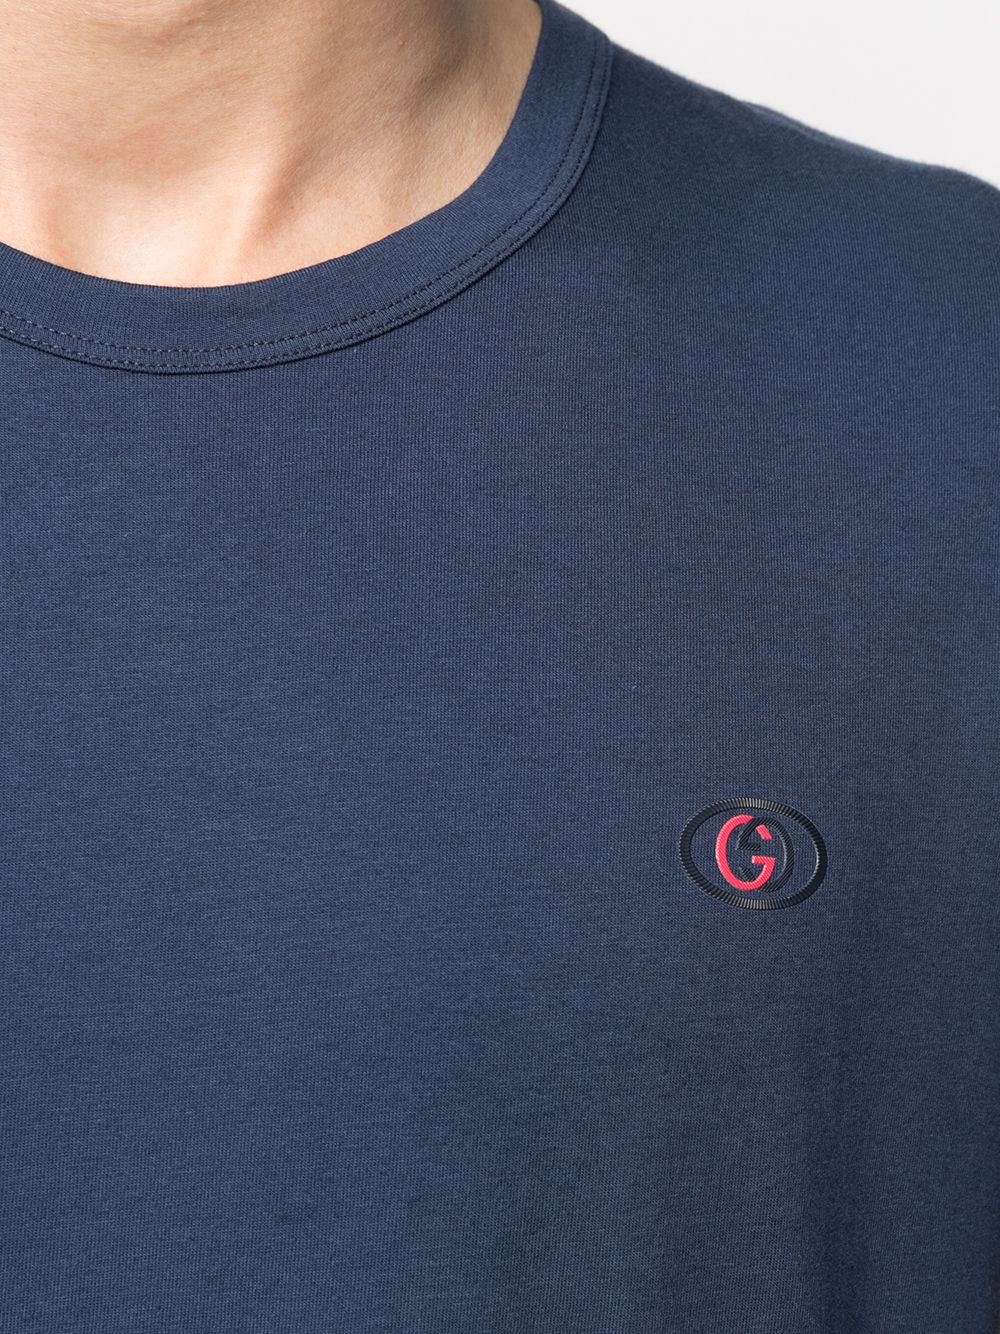 фото Gucci футболка с логотипом double g